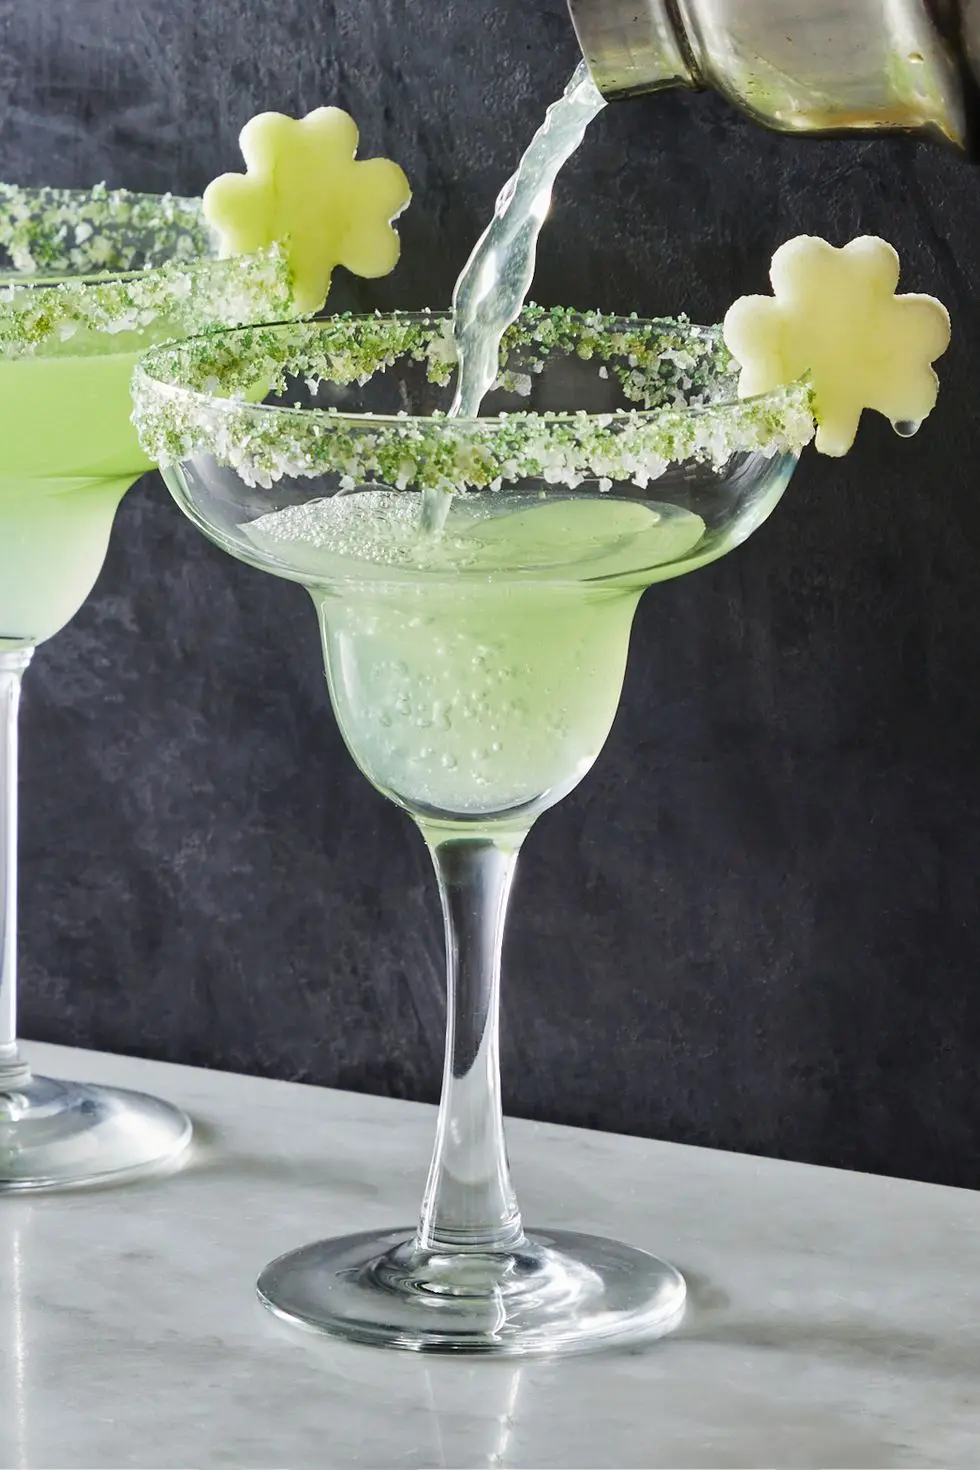 light green shamrockarita cocktail in a sugar rimmed glass with an apple slice shaped like a shamrock as garnish